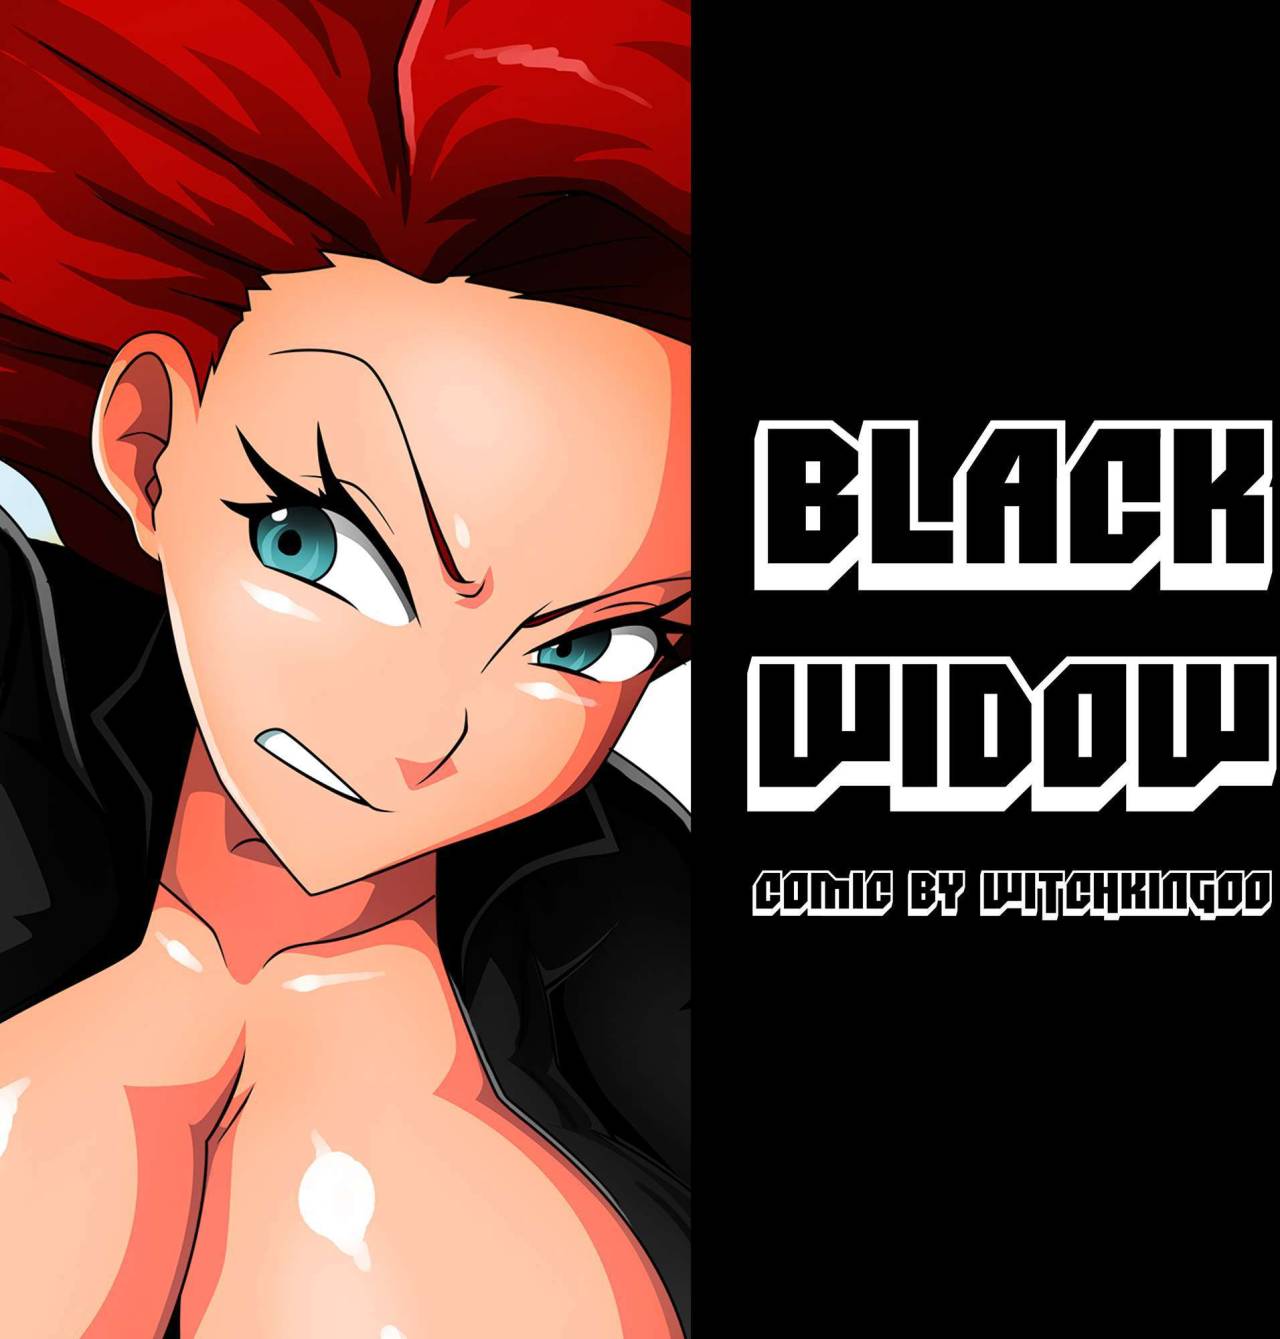 Black widow xxx hulk porn pics